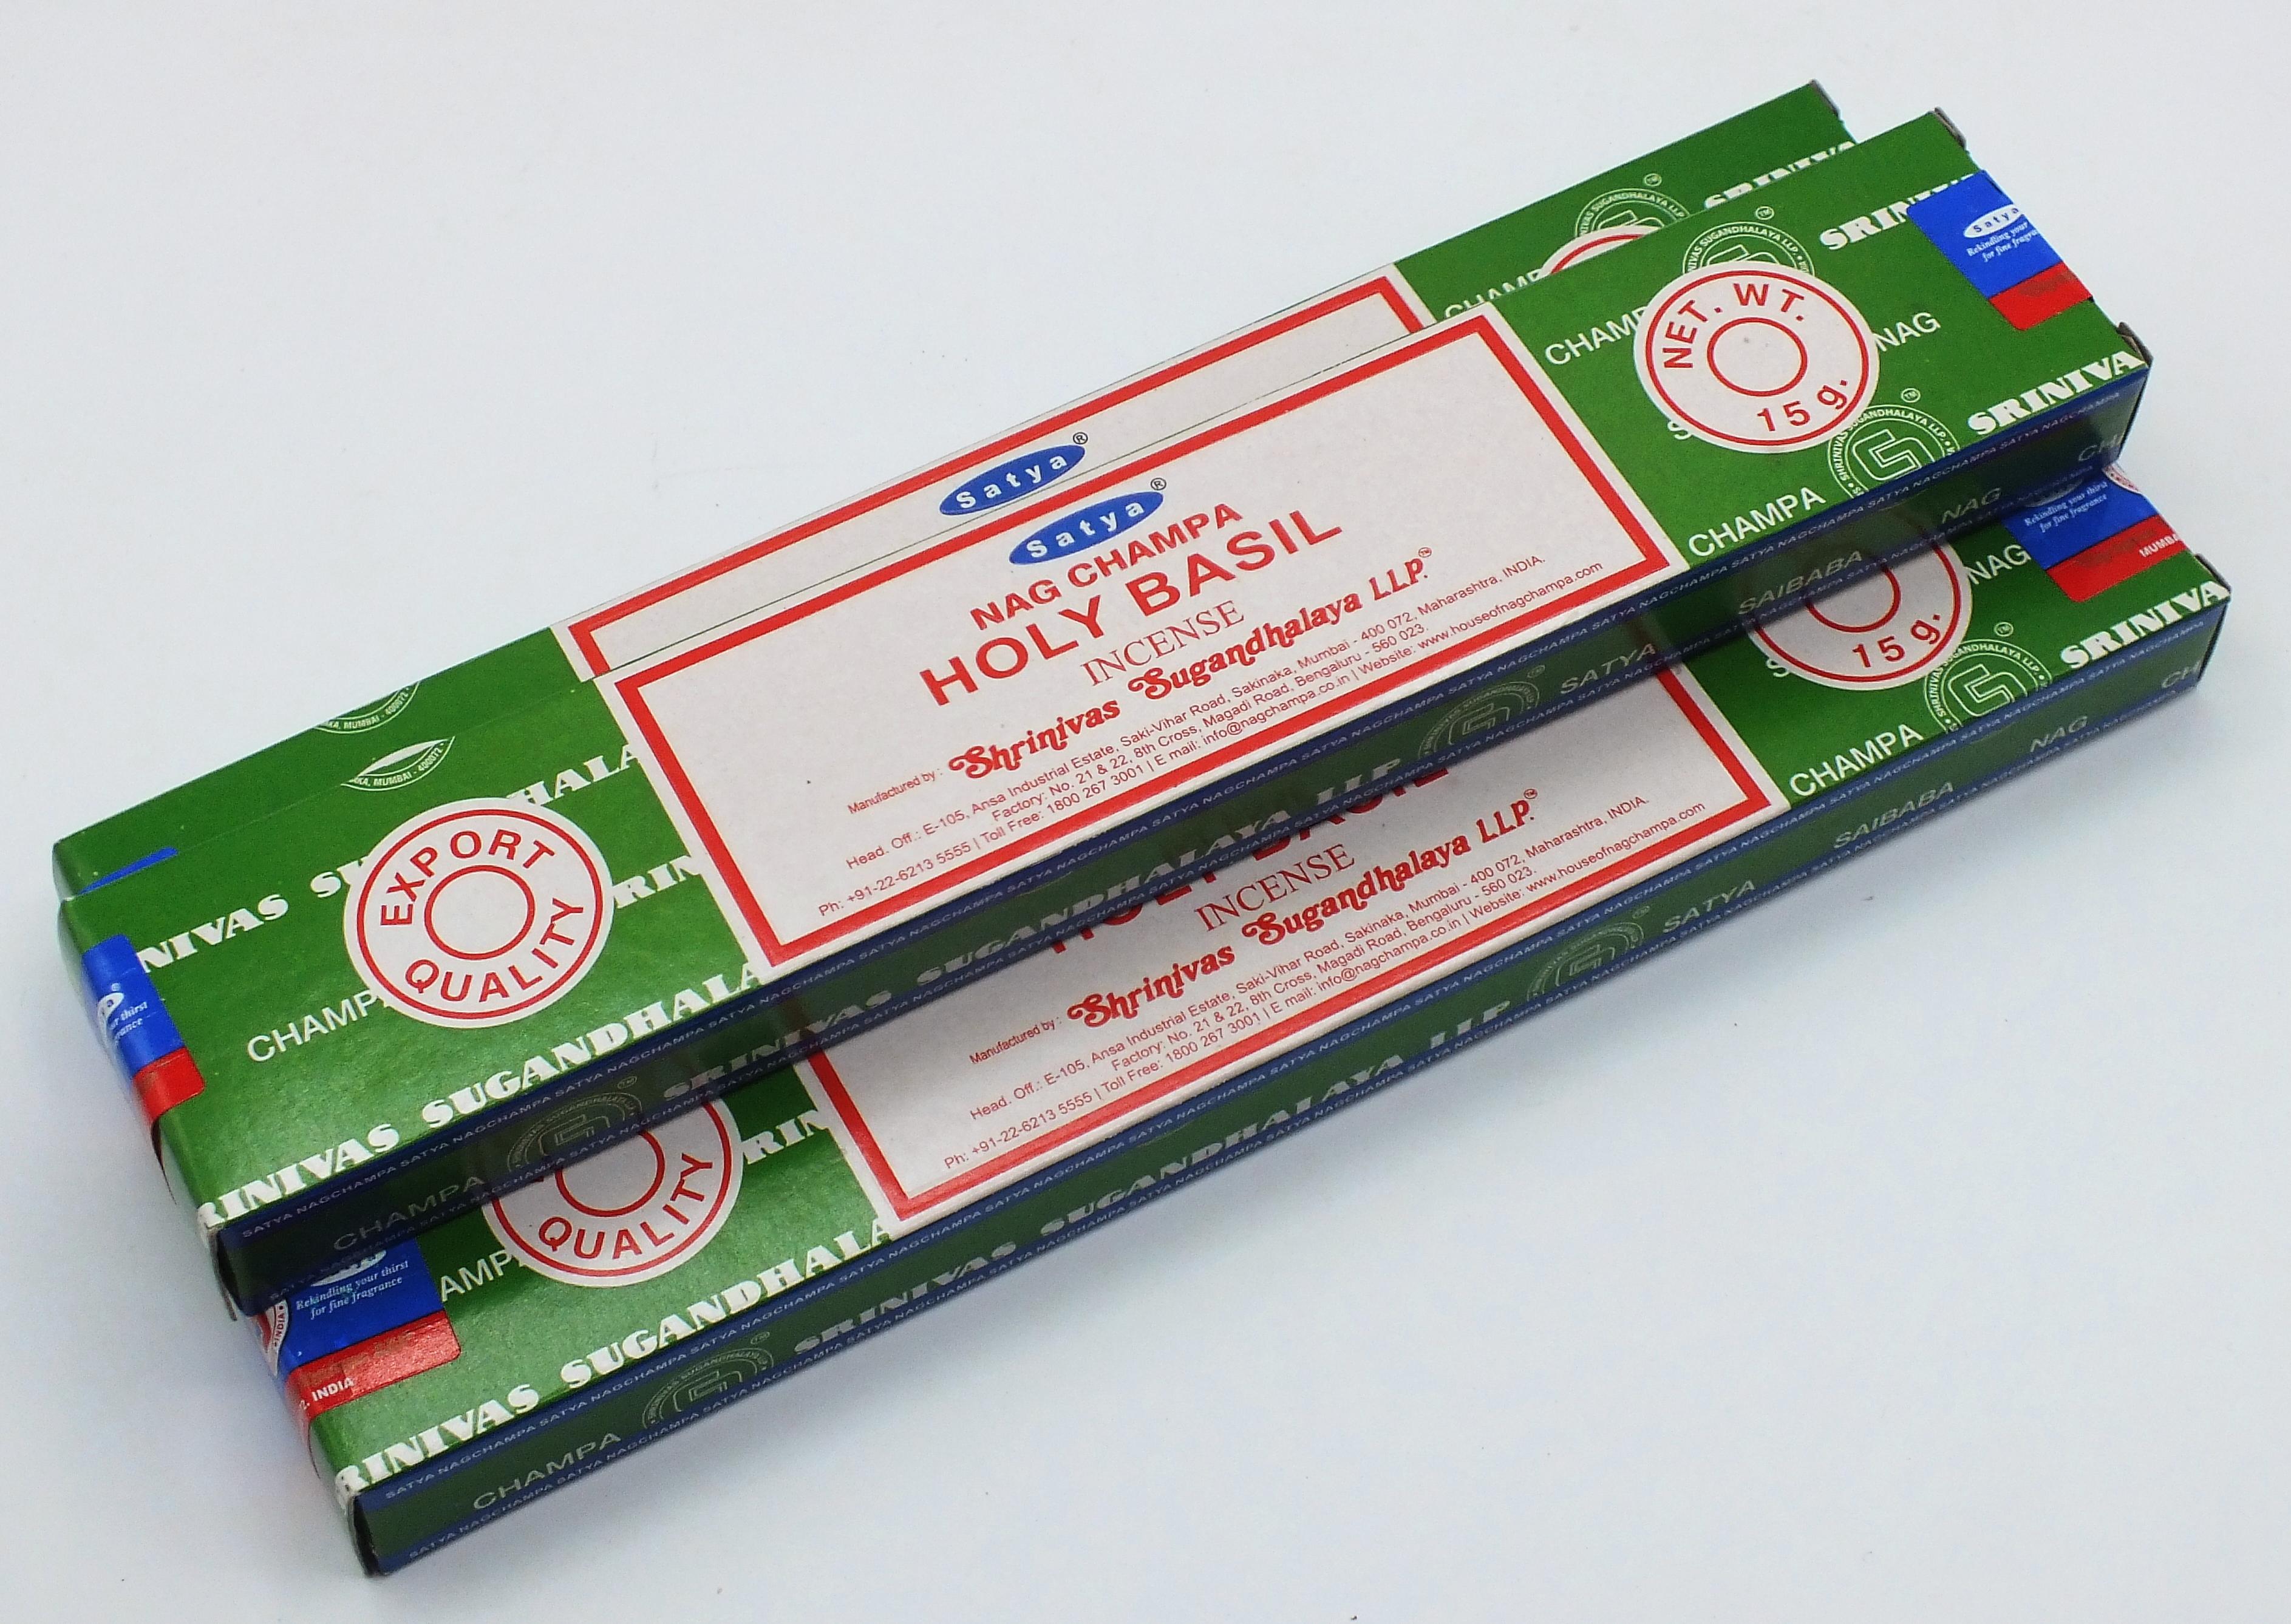 Holy Basil Satya Nag Champa Incense Sticks 15 gram Box